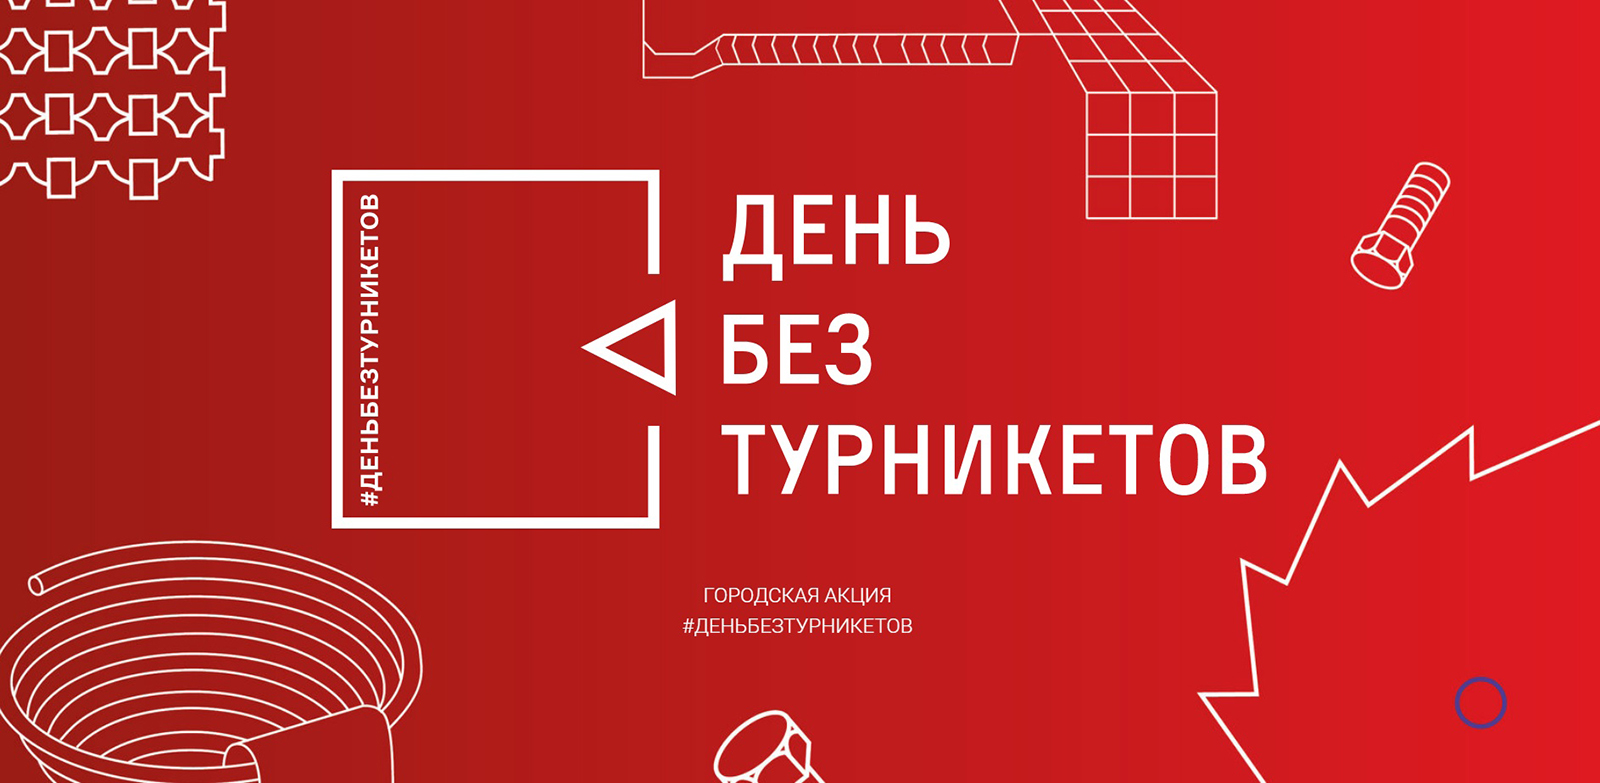 «День без турникетов» пройдет в Москве с 26 по 28 мая